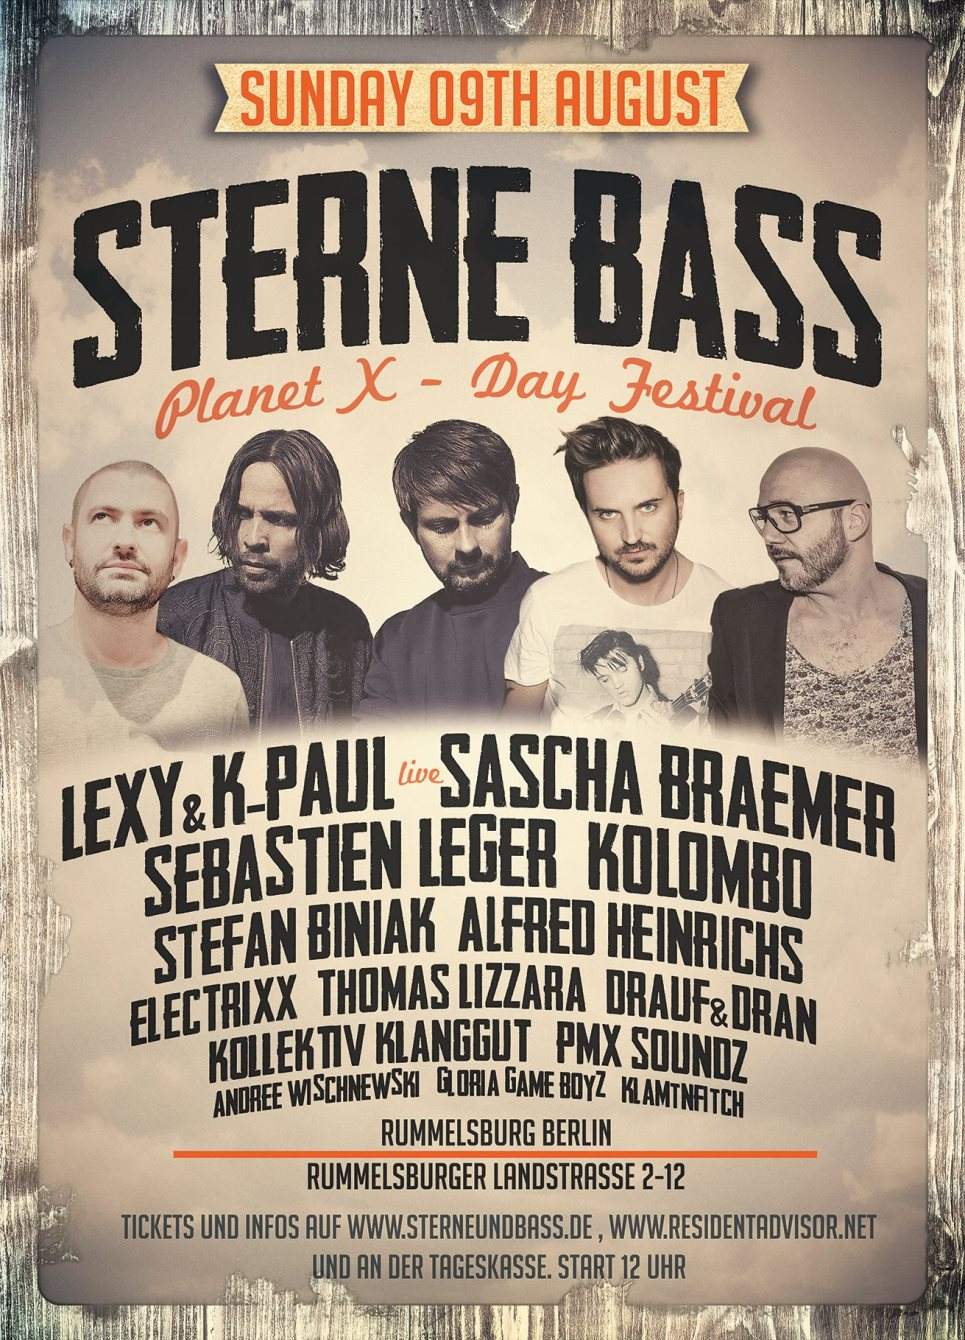 Sterne und Bass - Planet X - Day Festival - フライヤー表